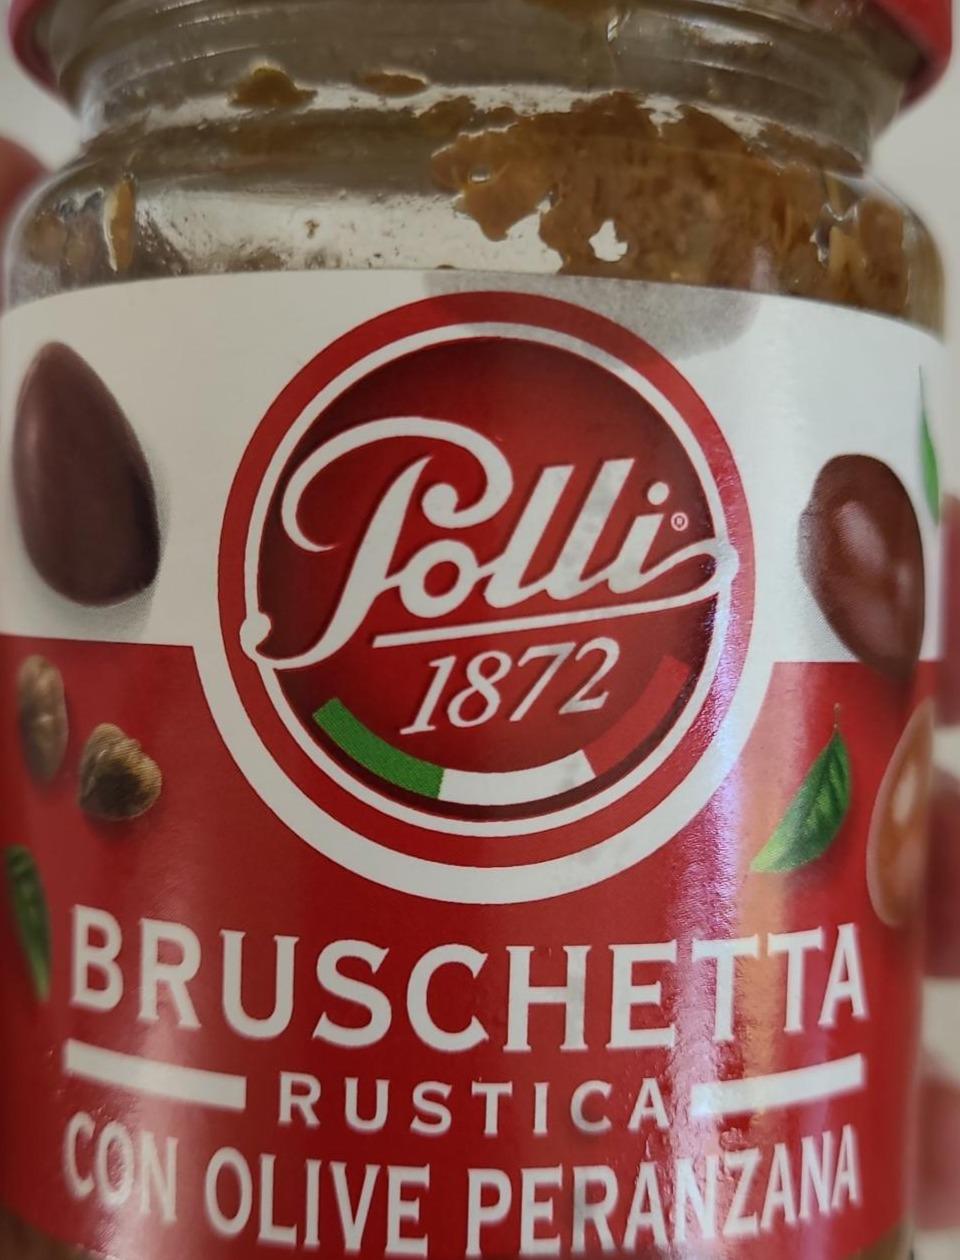 Fotografie - Bruschetta rustica con olive peranzana Polli